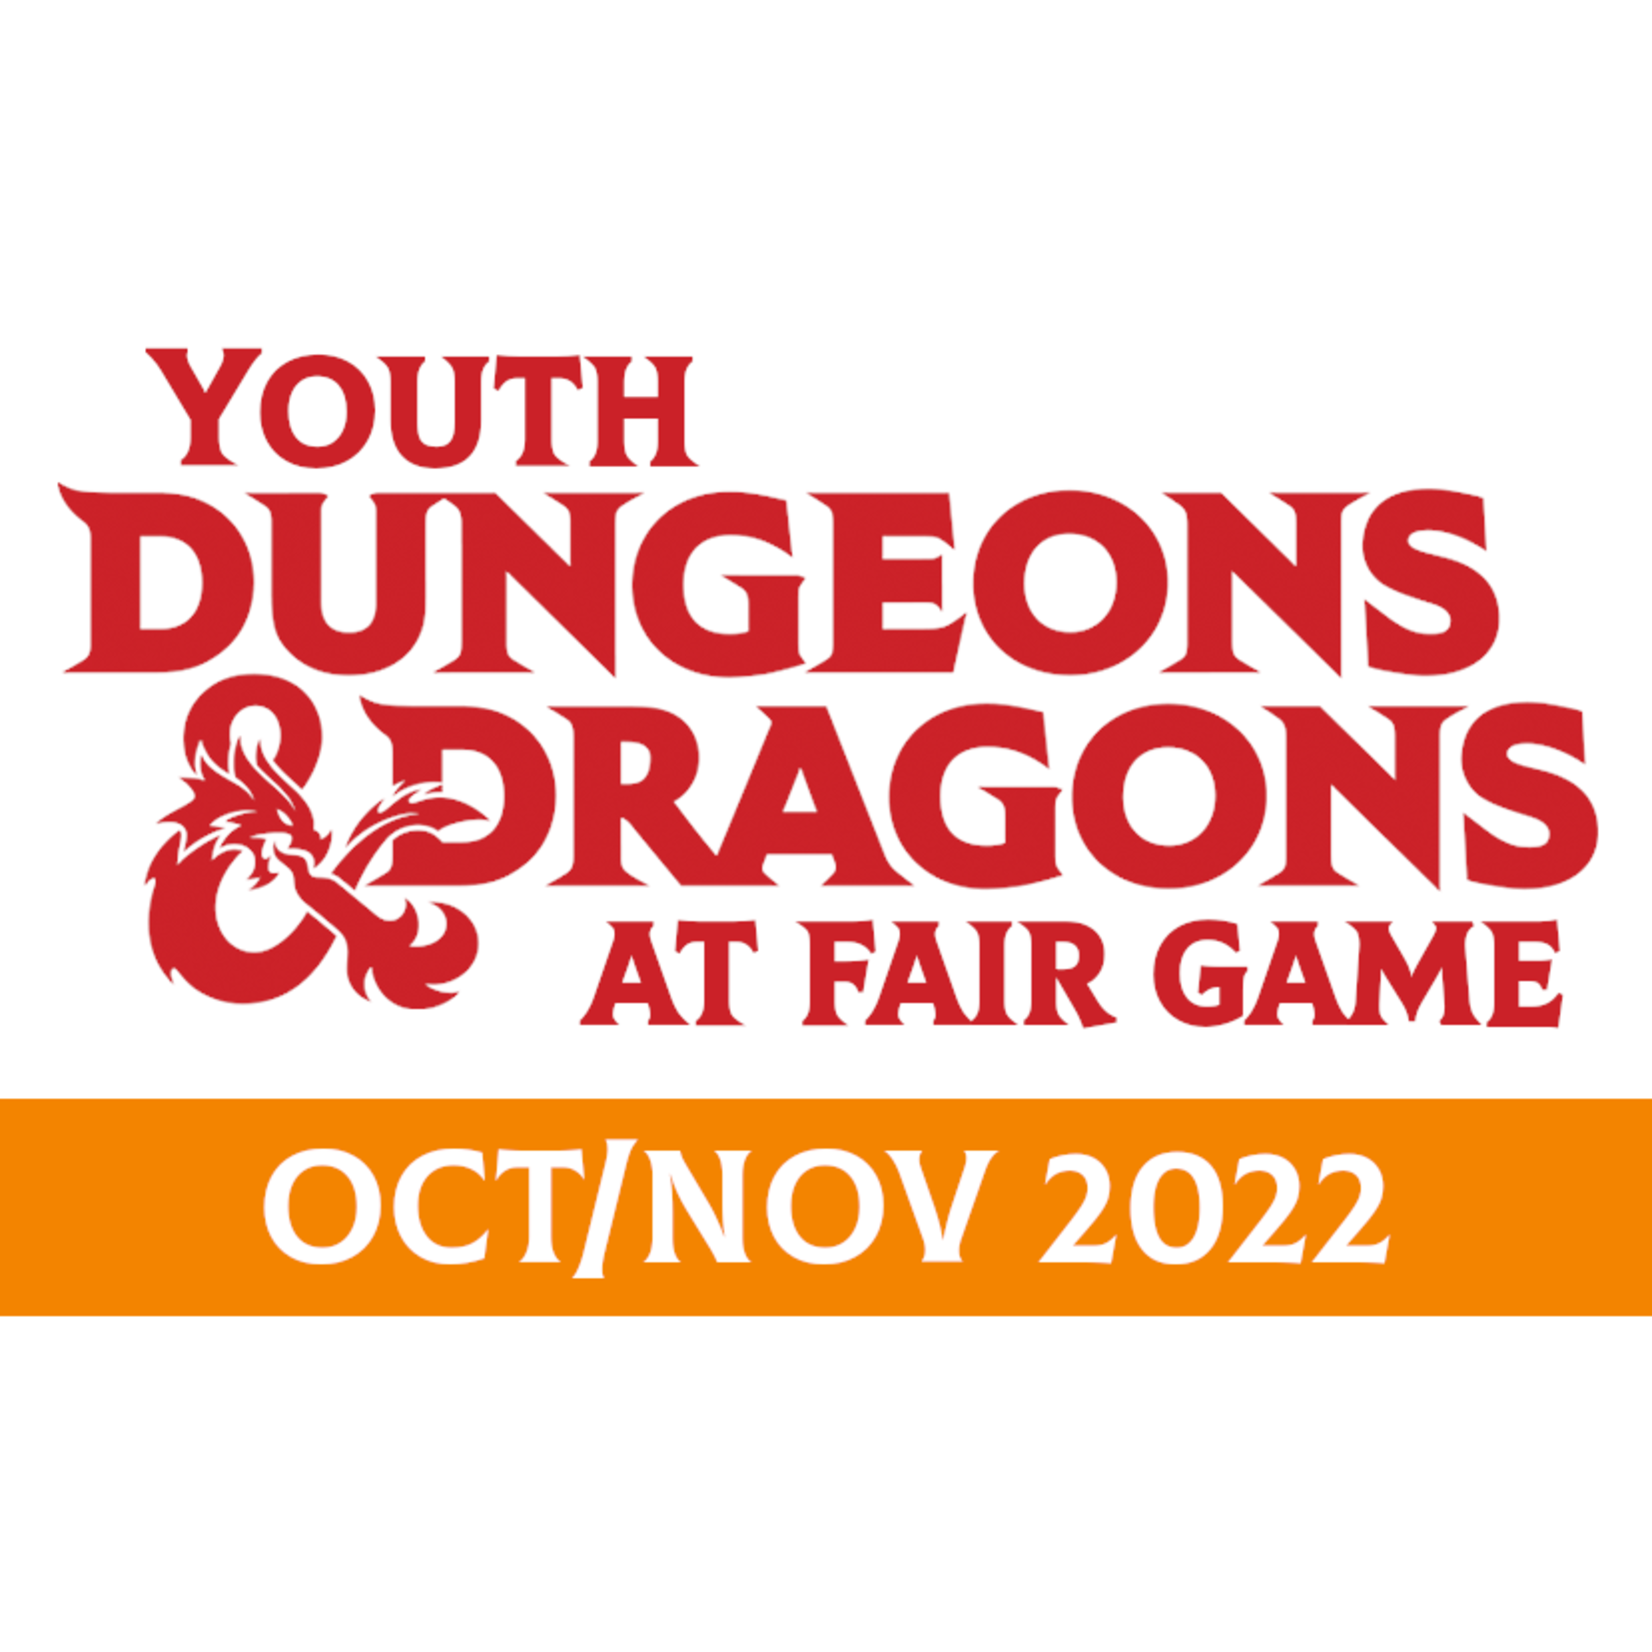 Fair Game YDND Oct/Nov 2022: Group LG1 - Thursday La Grange 6:30-8:30 PM CST (Ages 8-13)